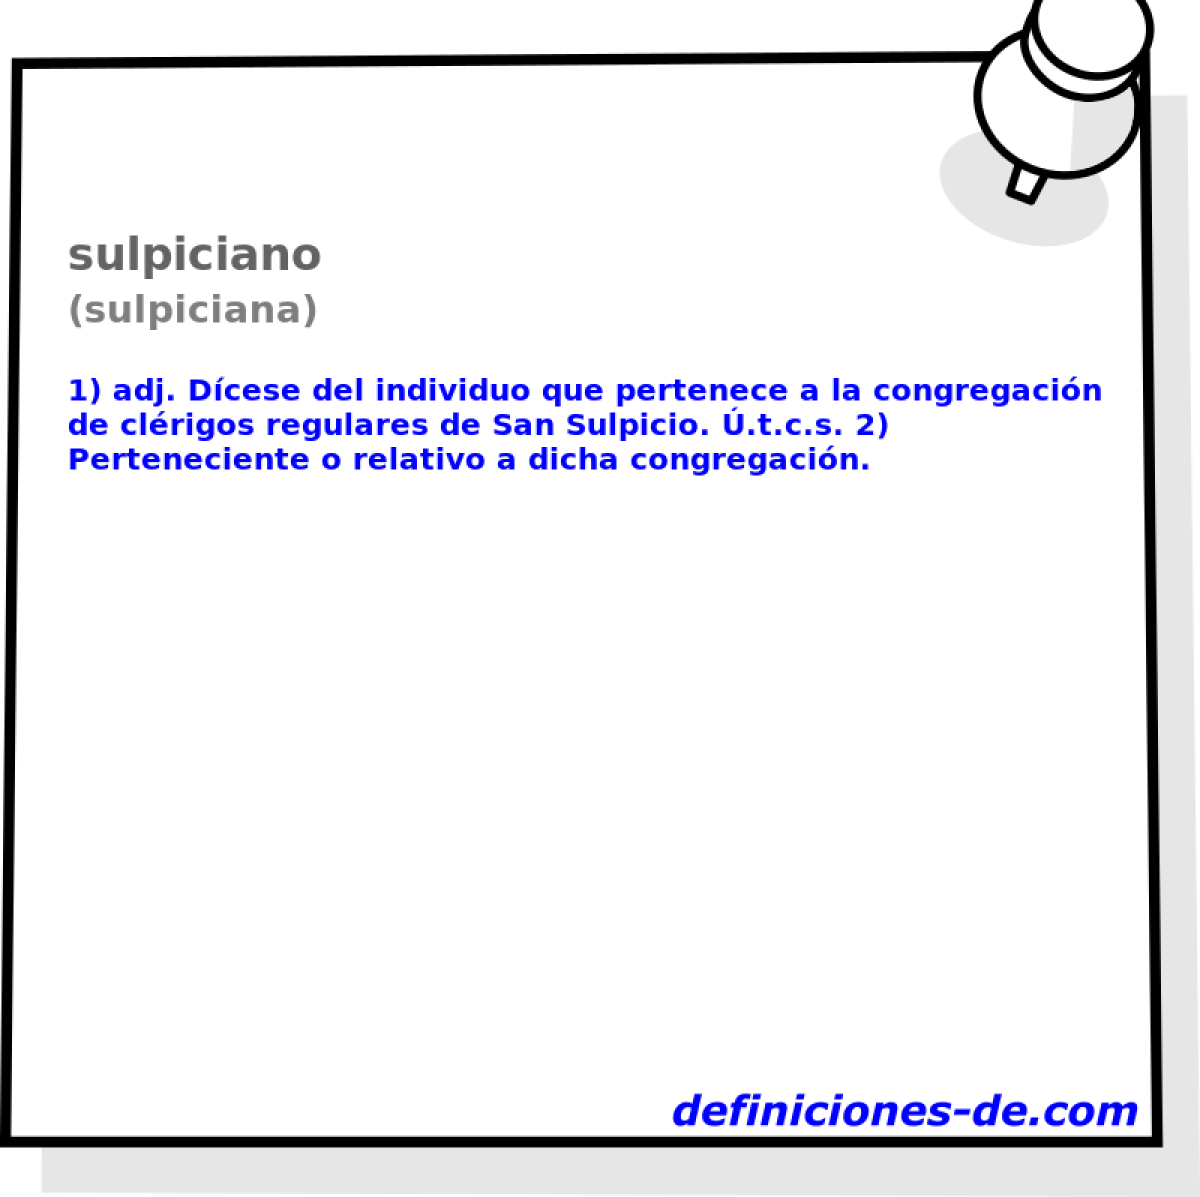 sulpiciano (sulpiciana)